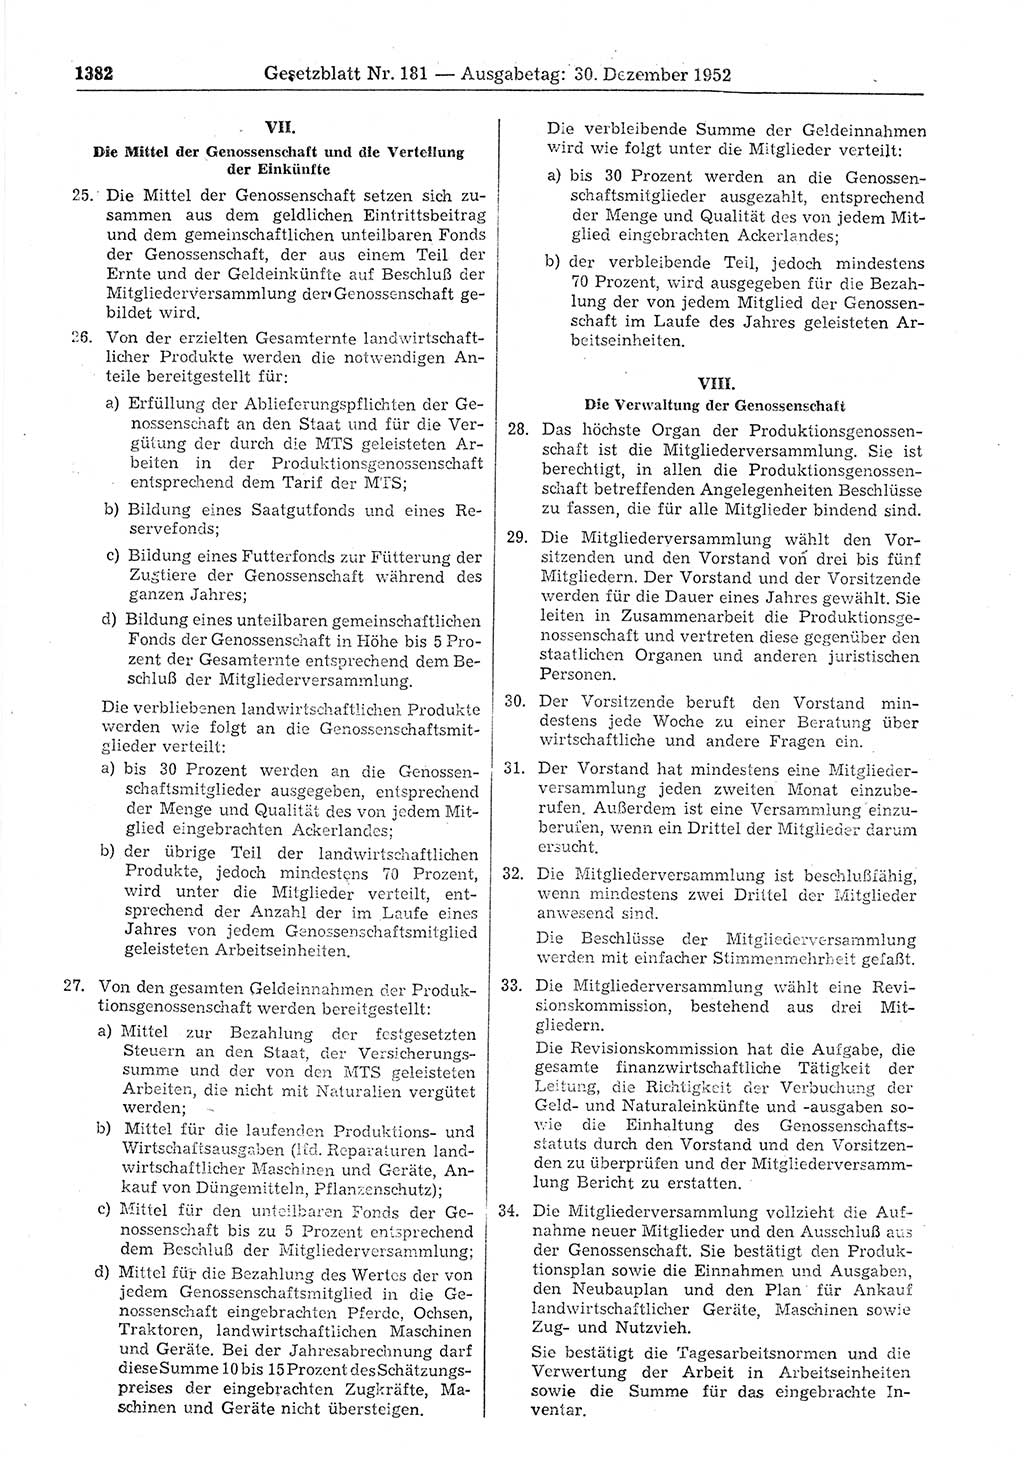 Gesetzblatt (GBl.) der Deutschen Demokratischen Republik (DDR) 1952, Seite 1382 (GBl. DDR 1952, S. 1382)